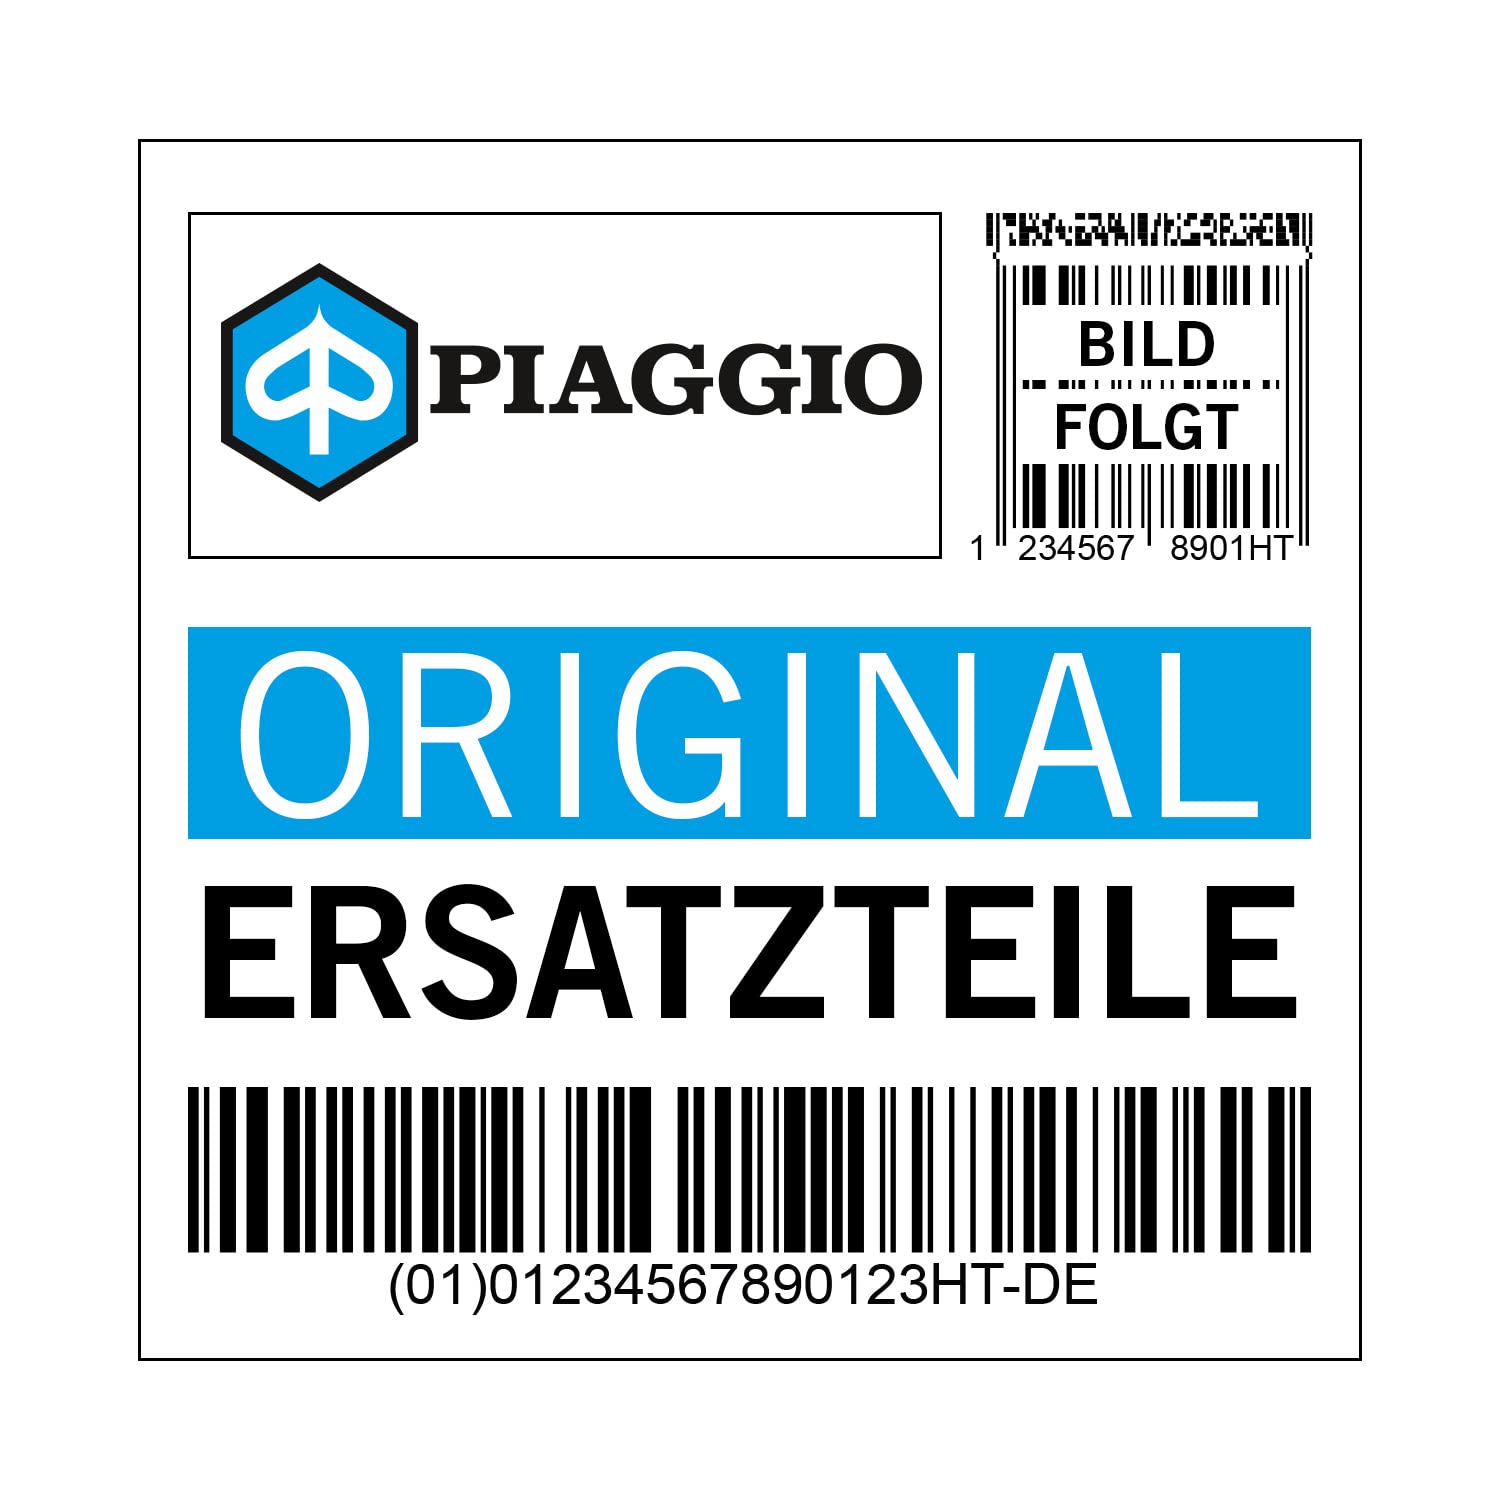 Mutter Piaggio Zylinderkopf, 6 mm, 288531 von Maxtuned